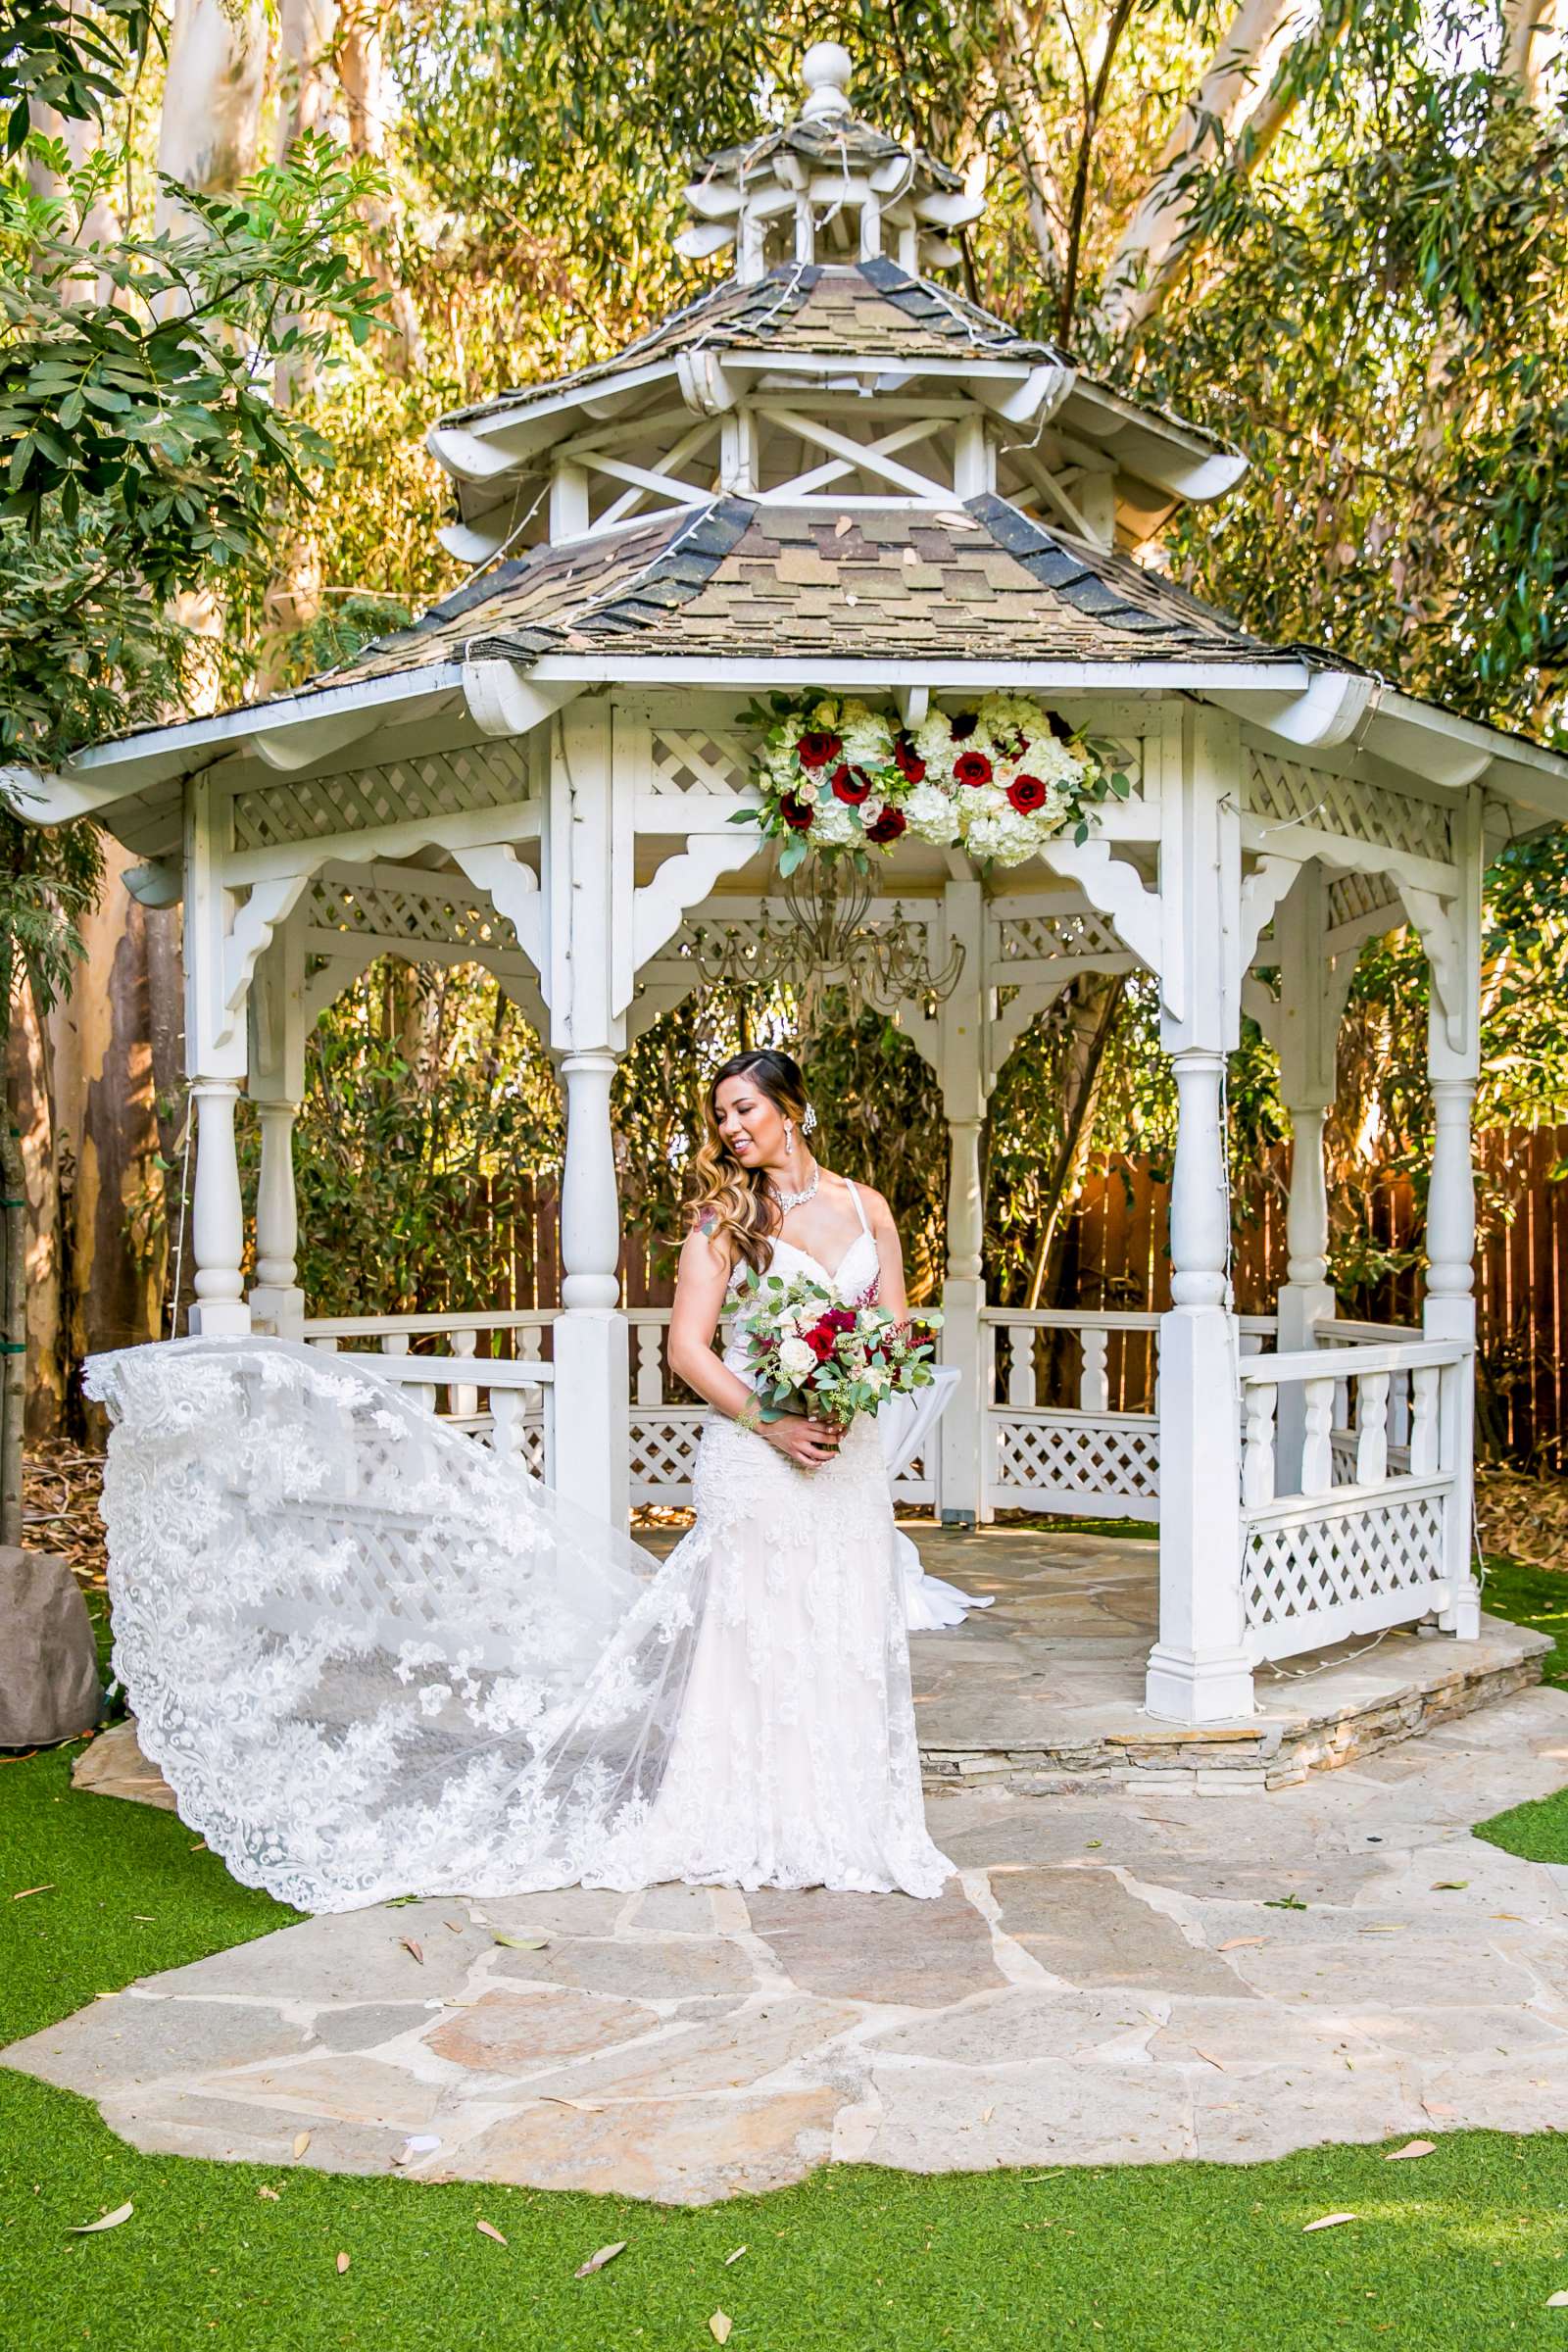 Twin Oaks House & Gardens Wedding Estate Wedding, Merrilynn and Trey Wedding Photo #57 by True Photography